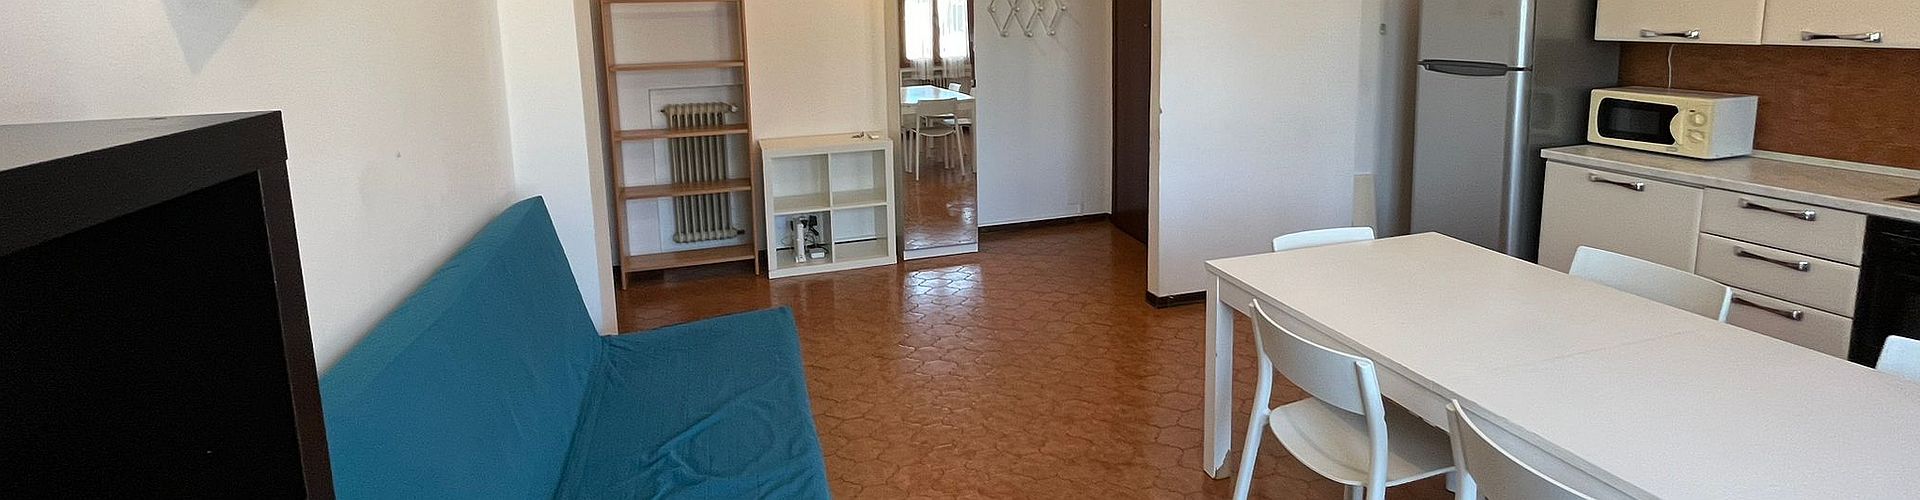 Appartamenti per studenti Padova